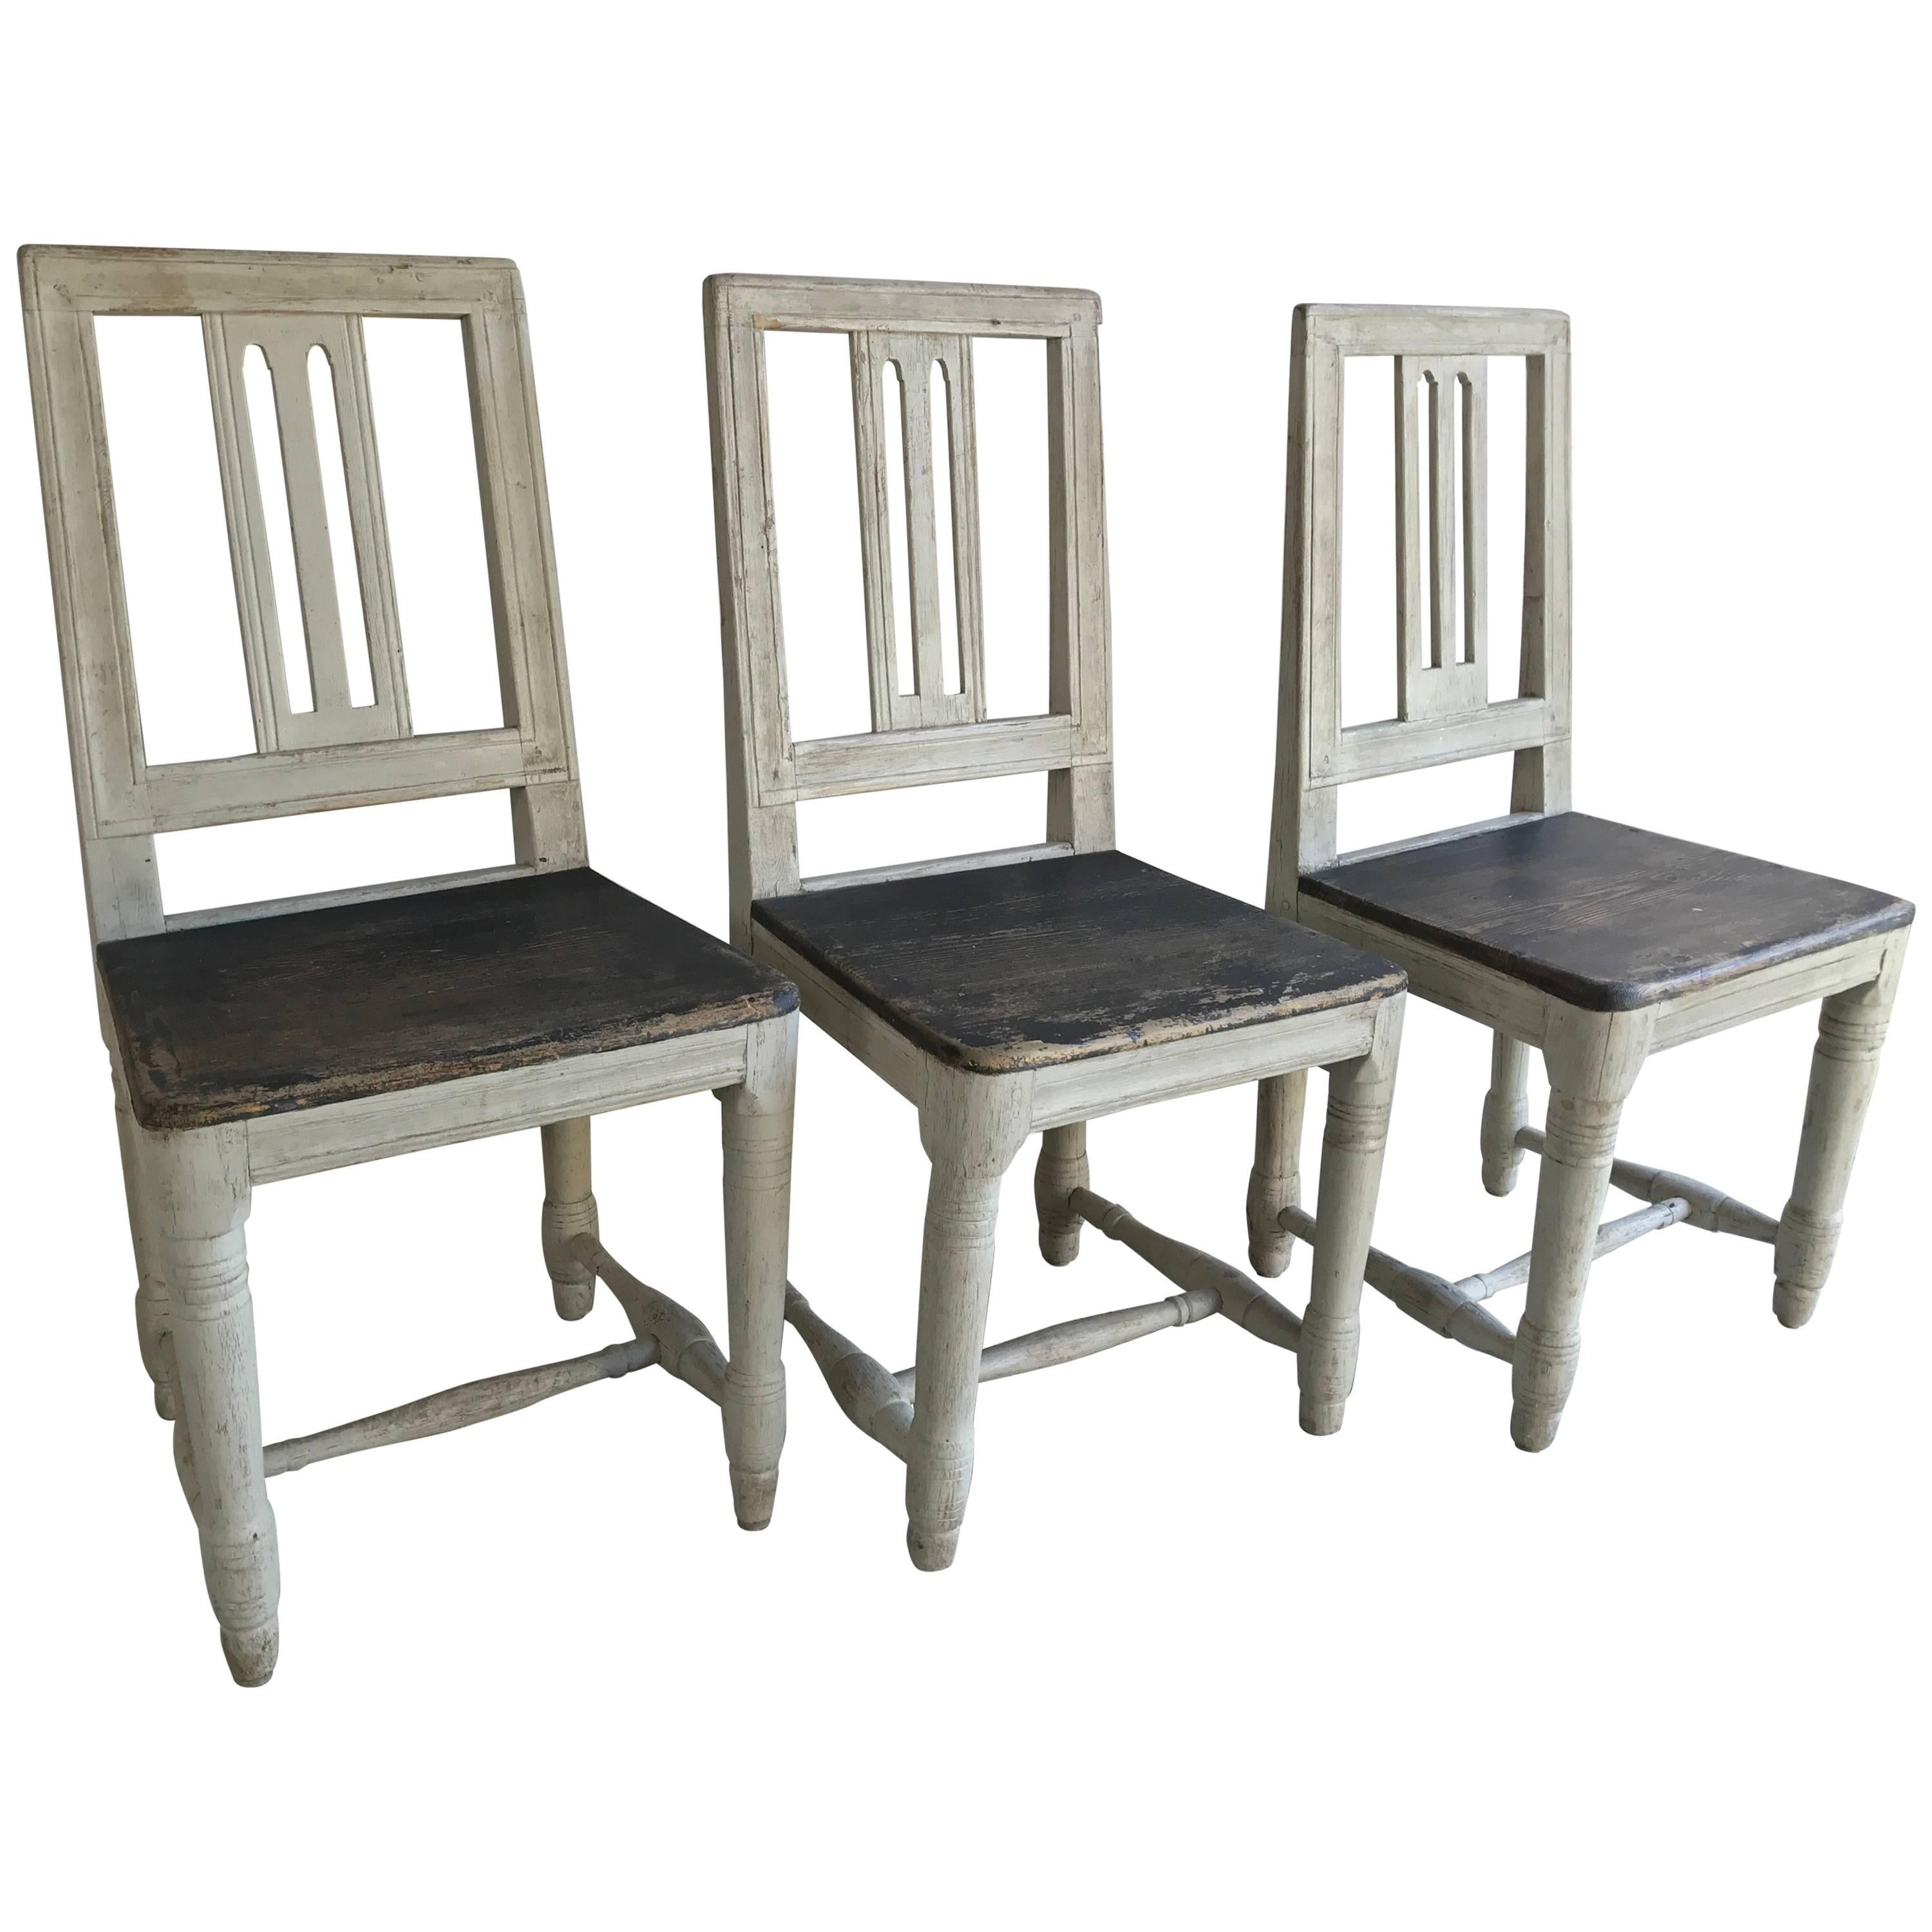 Three 19th Century Swedish Chairs